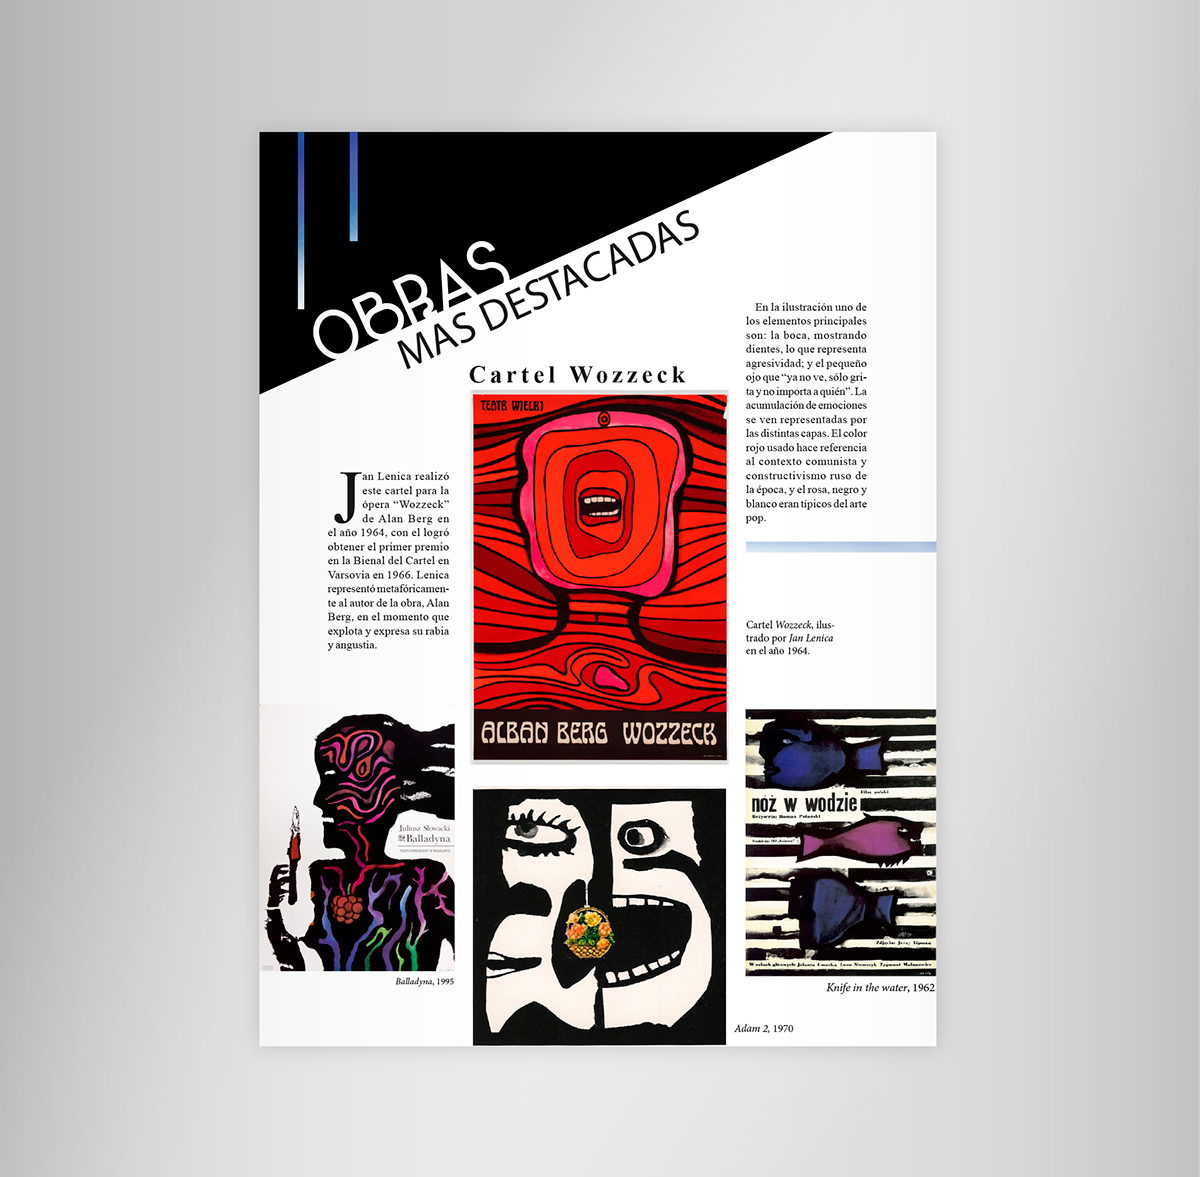 magazine revista spread magazinespread central diagramación editorial janlenica artistspread